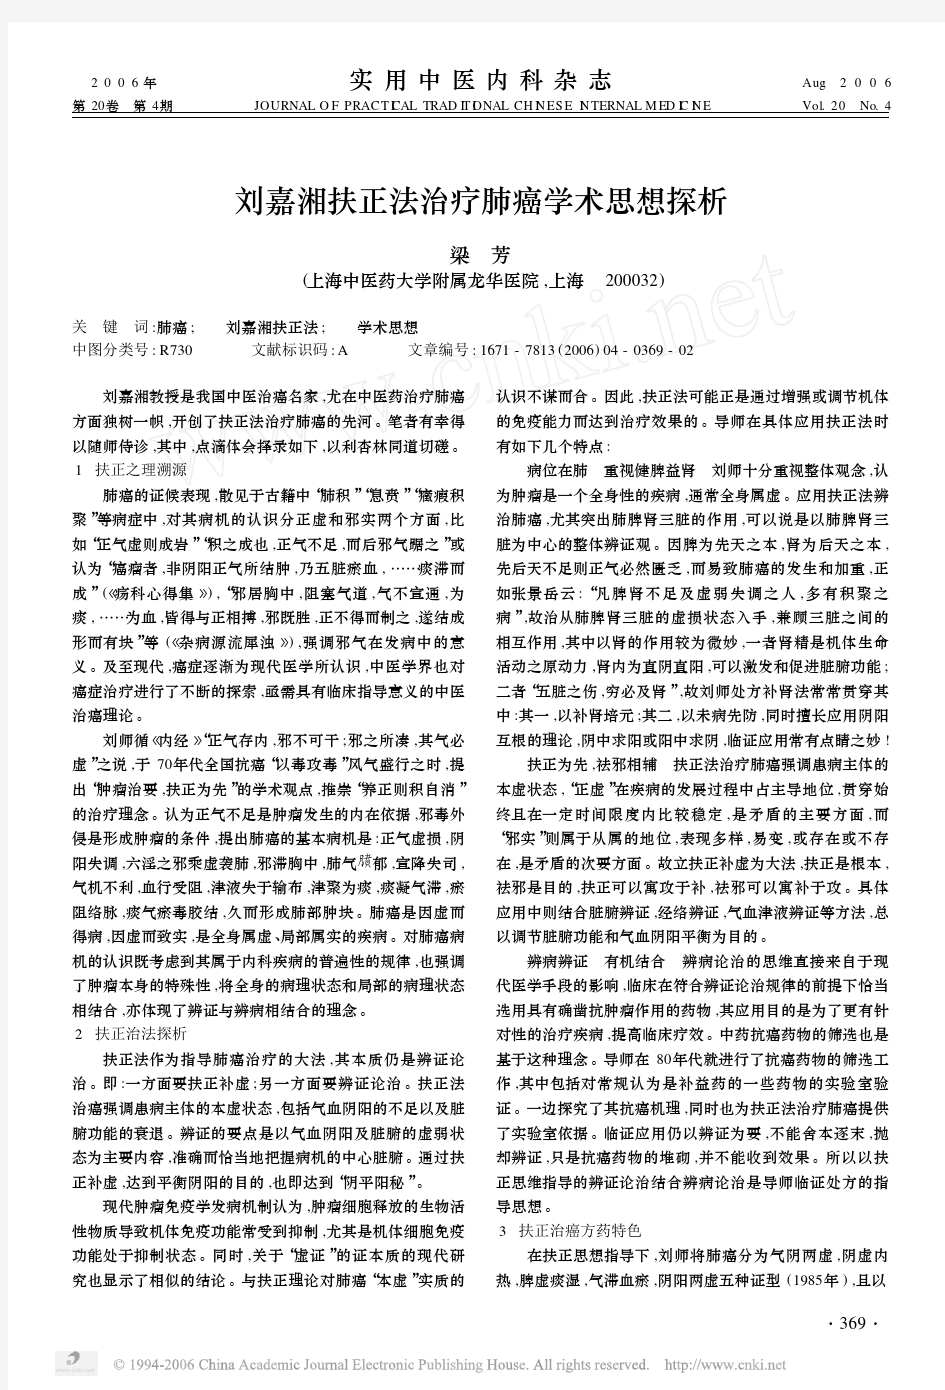 刘嘉湘扶正法治疗肺癌学术思想探析